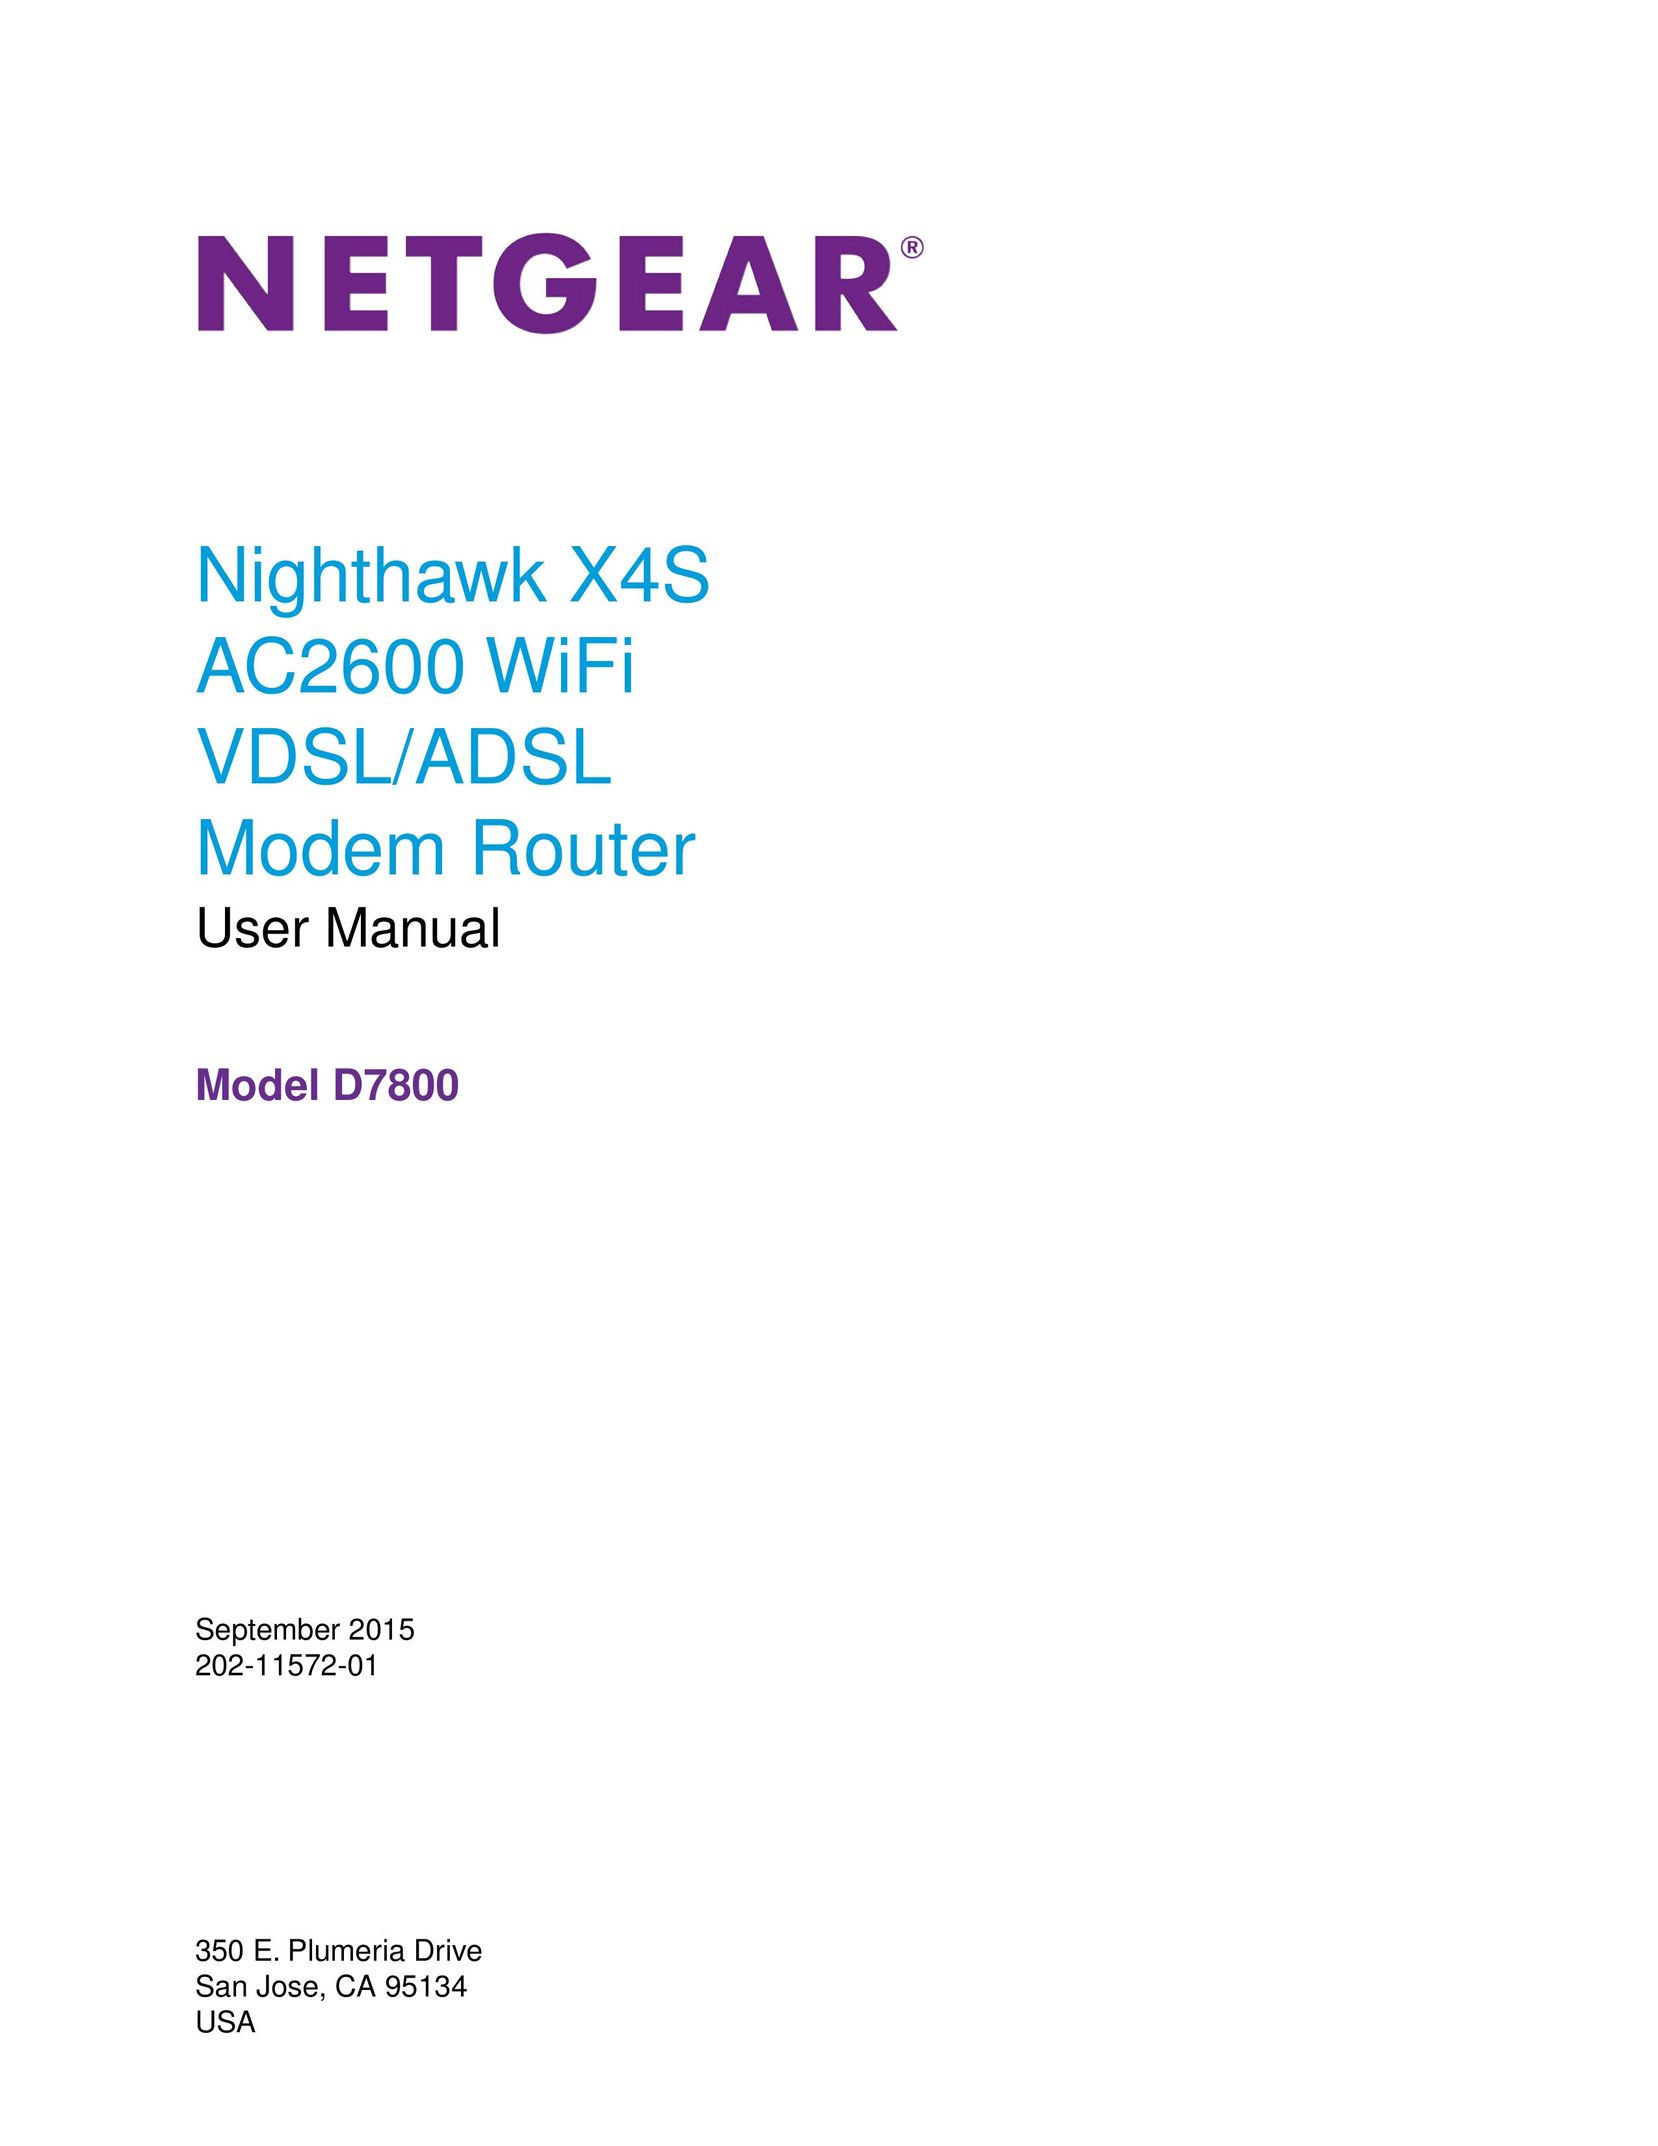 NETGEAR D7800 Network Router User Manual